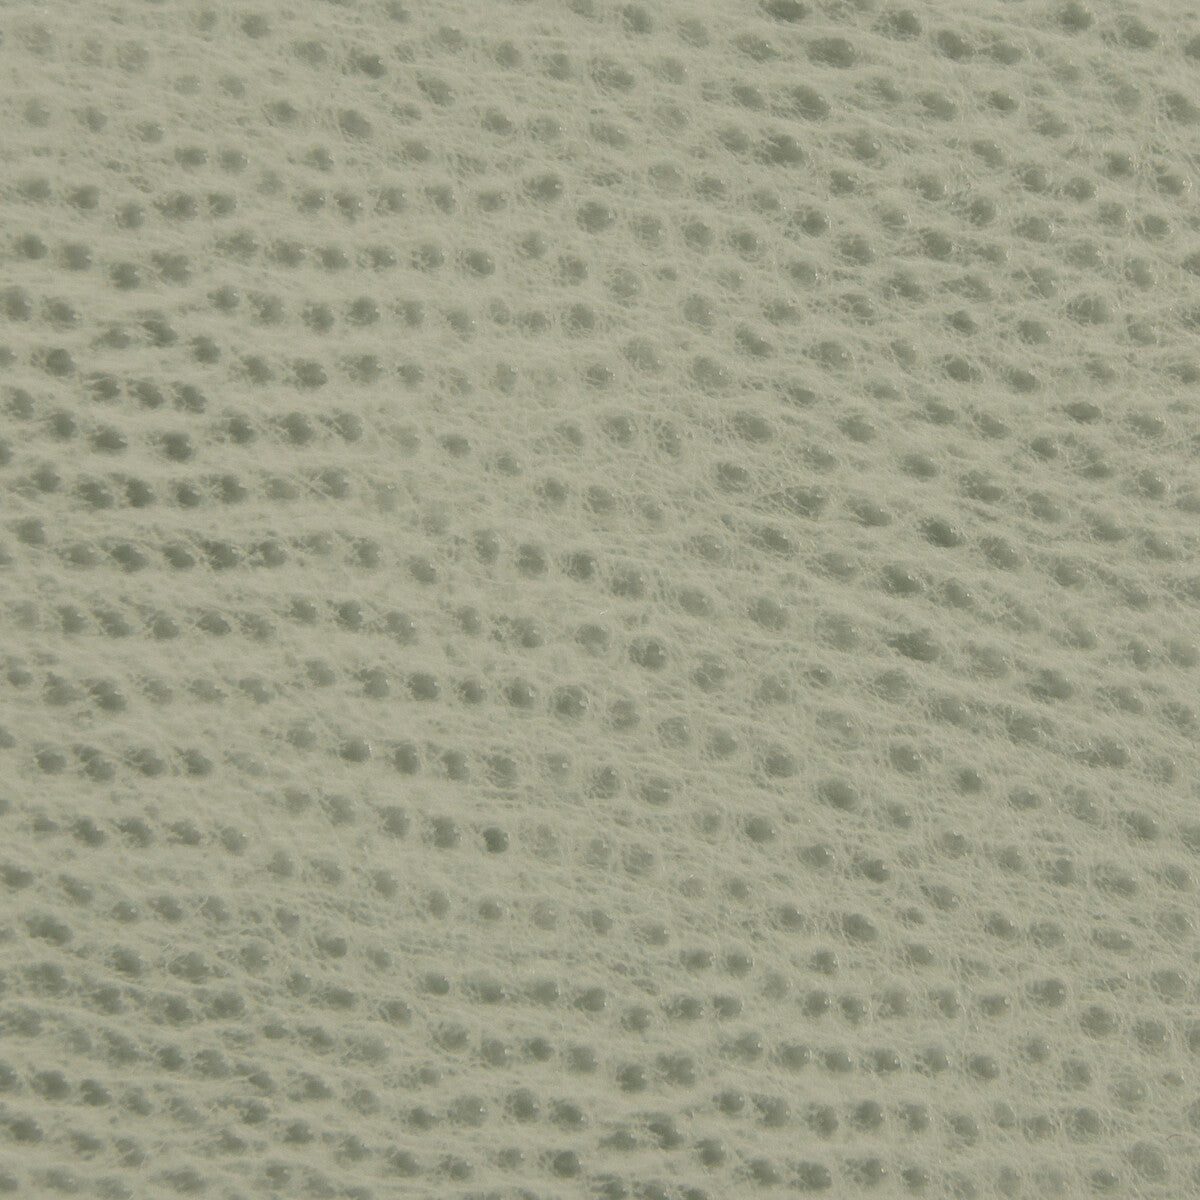 Kravet Smart fabric in ossy-135 color - pattern OSSY.135.0 - by Kravet Smart